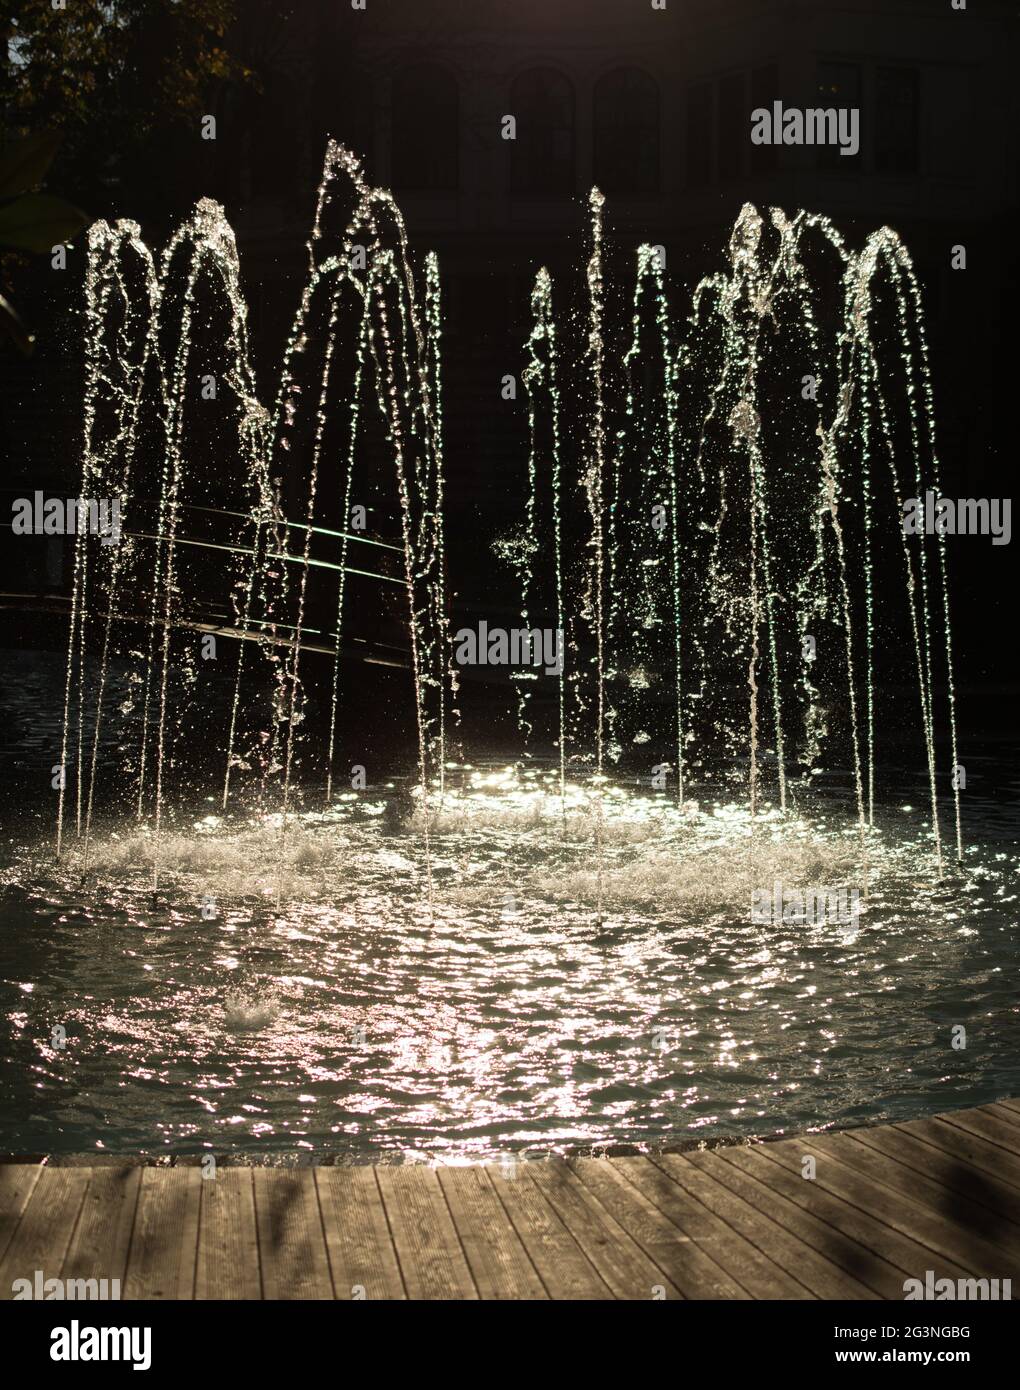 Le fontane sgorgano acqua frizzante in una piscina Foto stock - Alamy